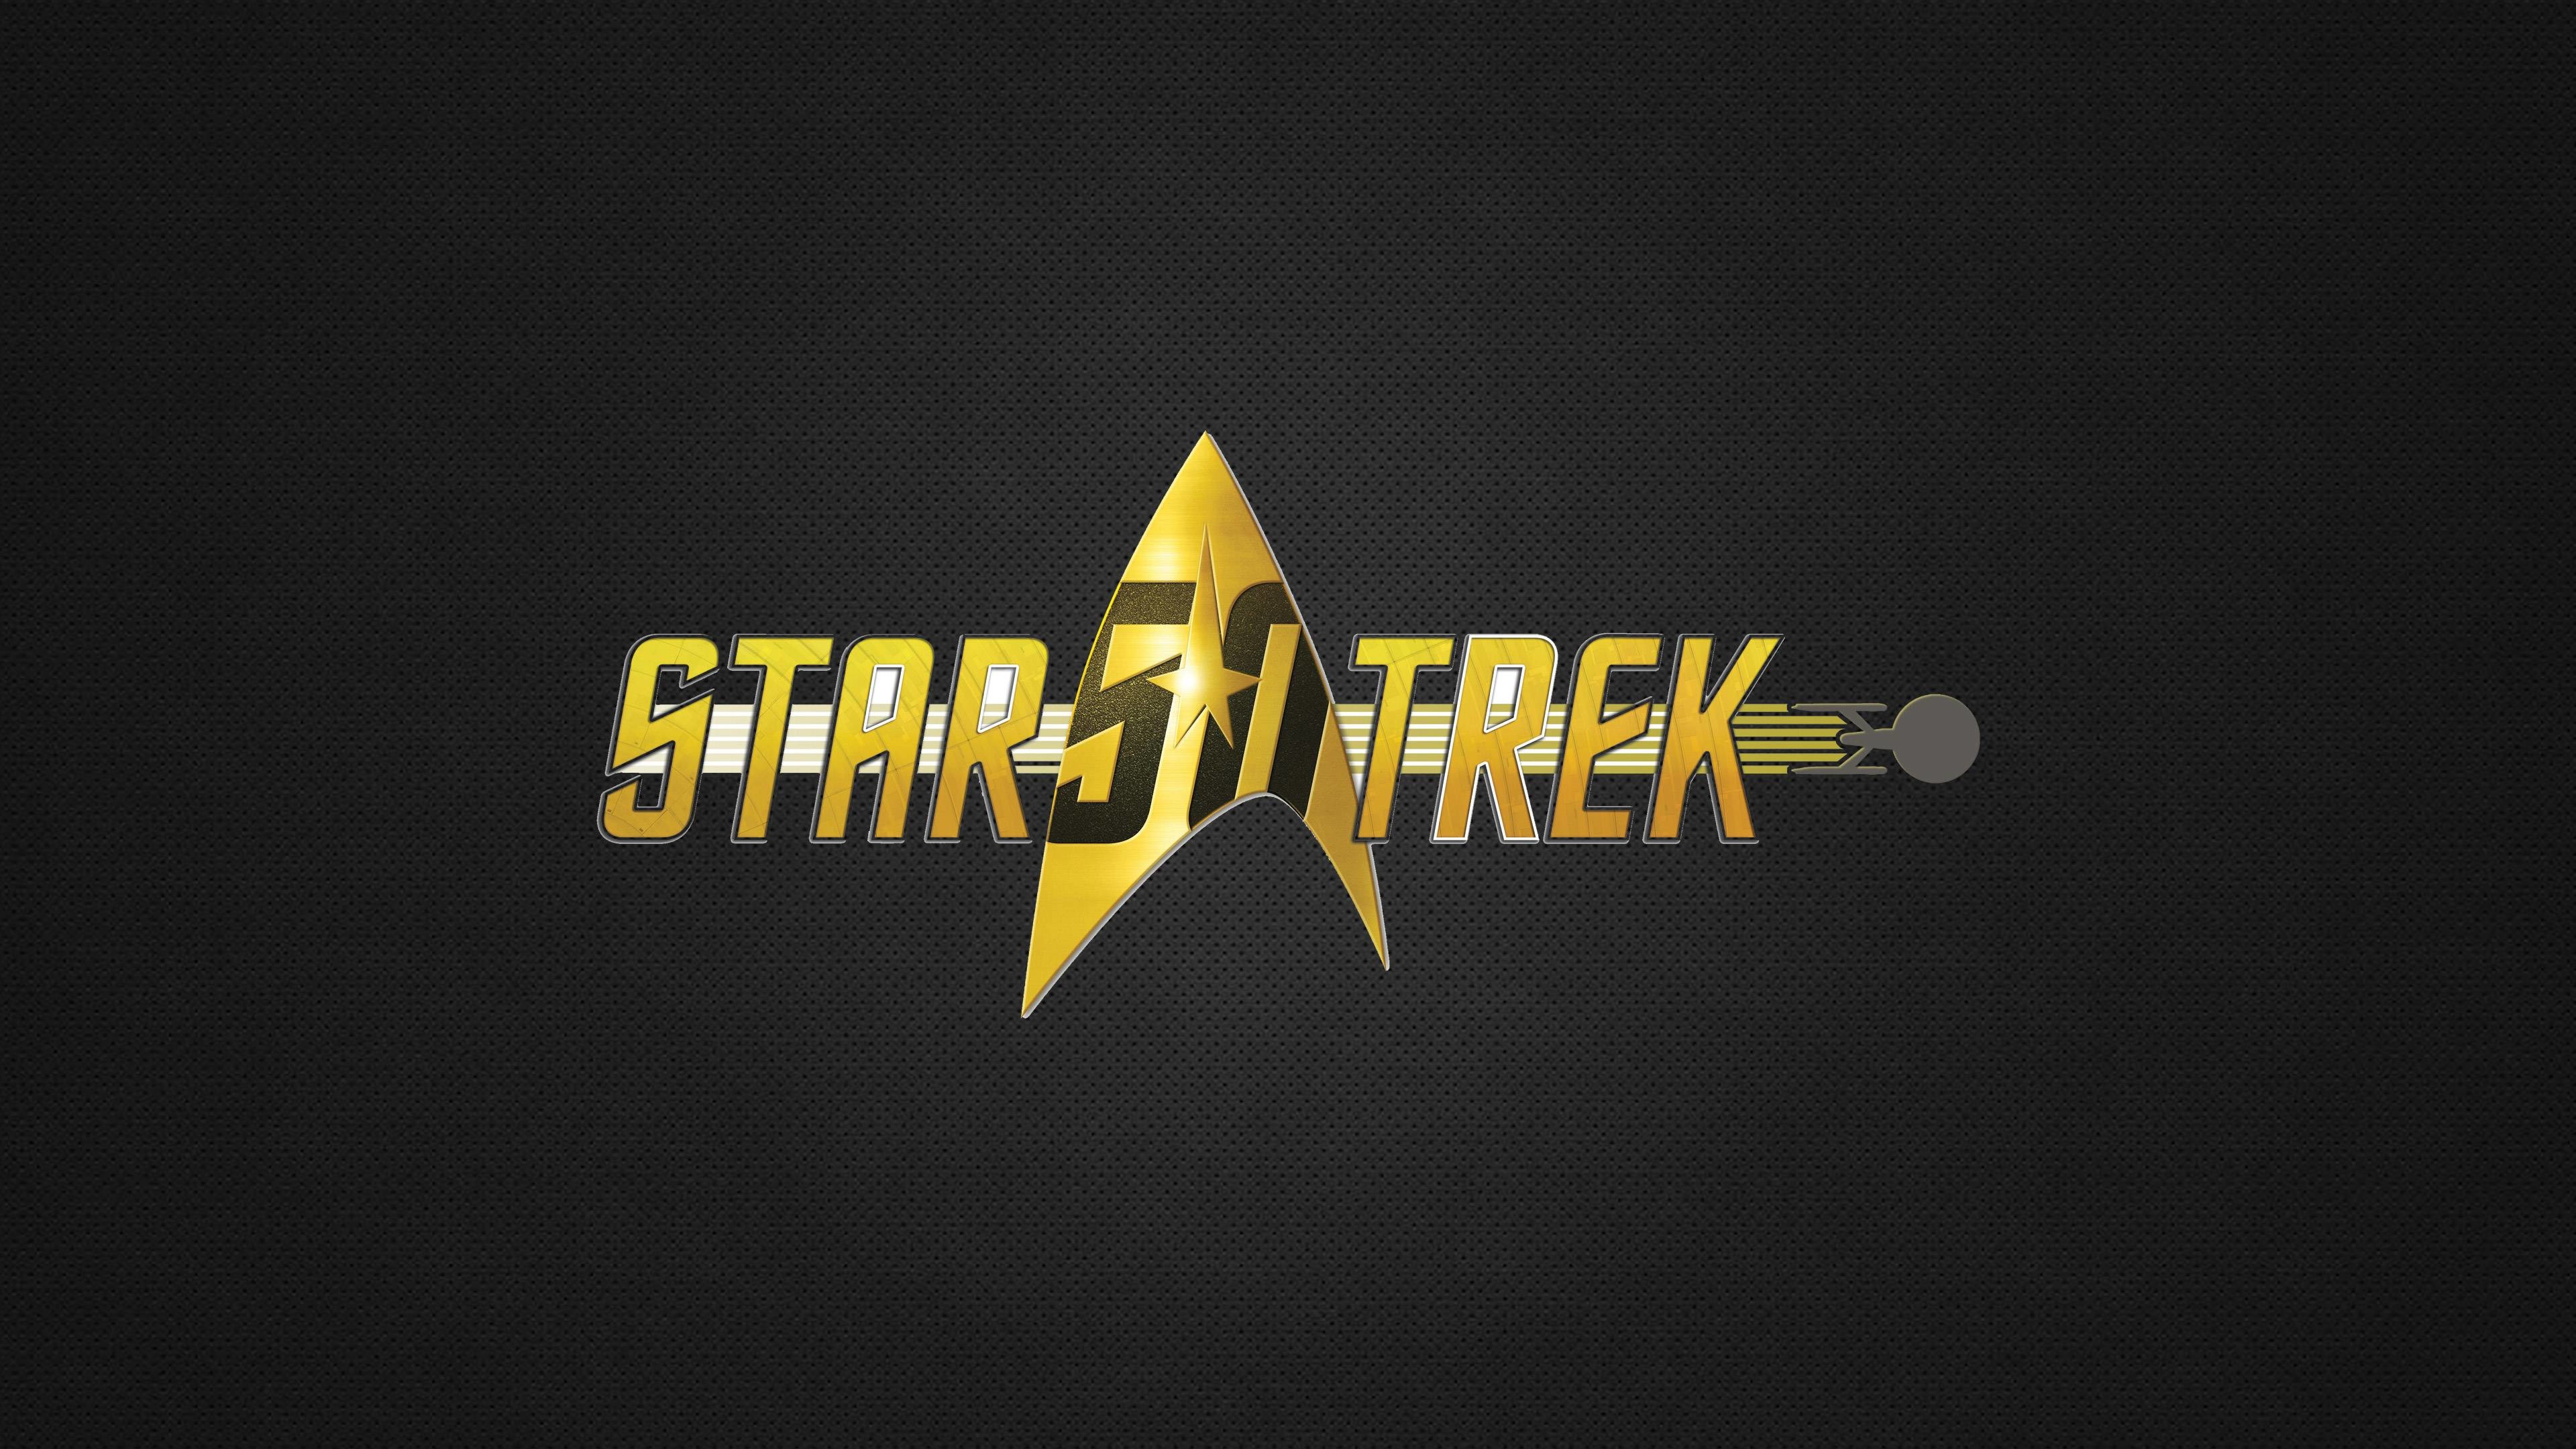 Star Trek 50th Anniversary by Judai Winchester